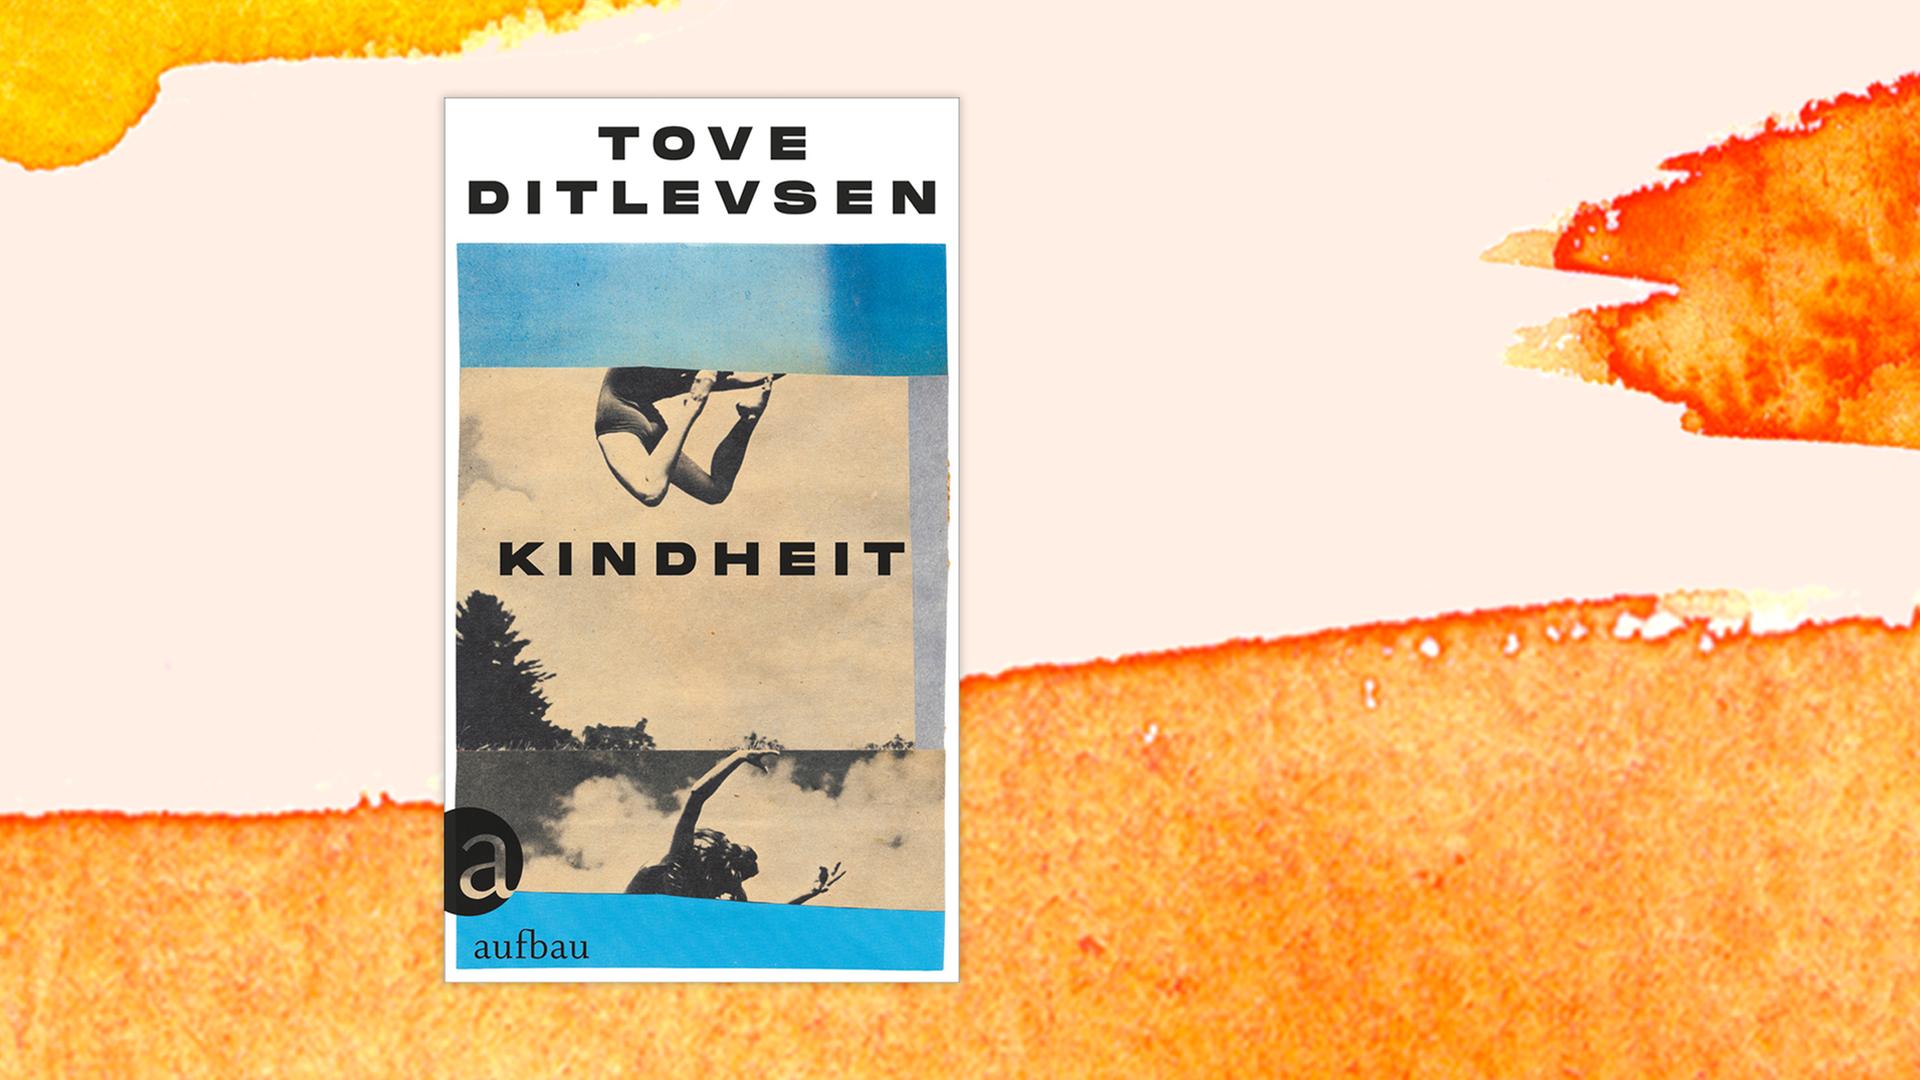 Das Buchcover "Kindheit" von Tove Ditlevsen ist vor einem grafischen Hintergrund zu sehen.